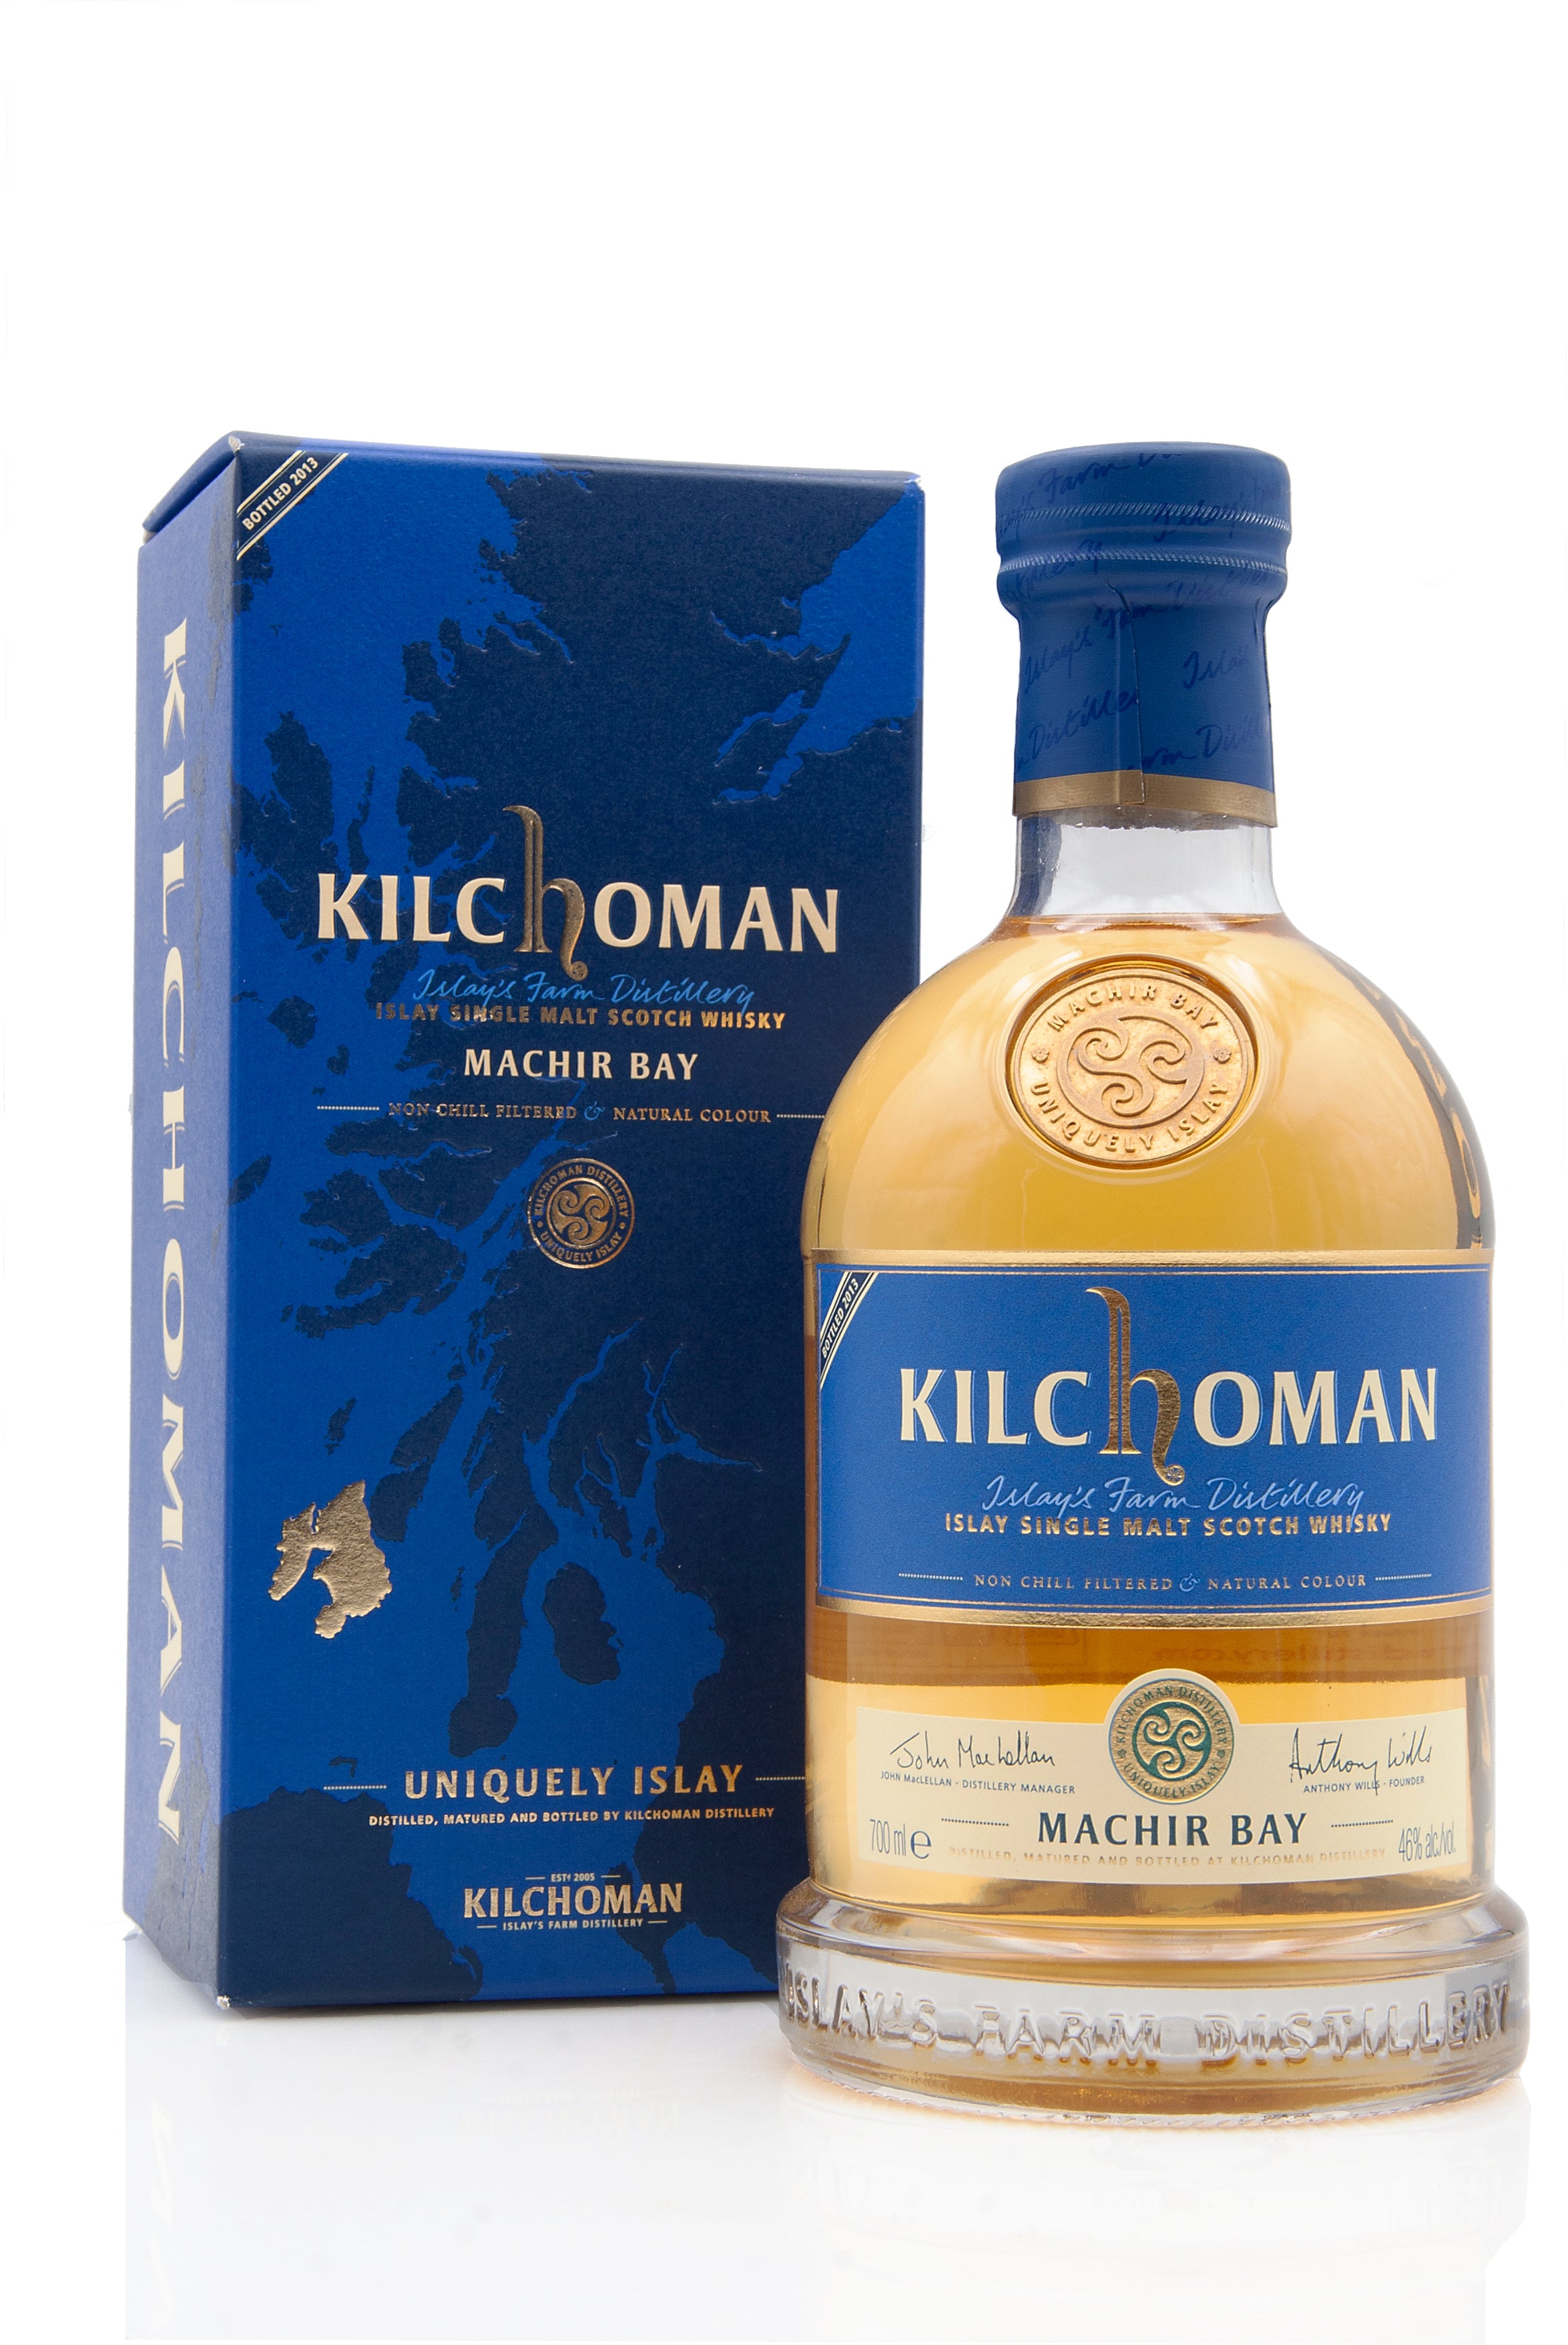 Kilchoman Machir Bay 2013 Release | Abbey Whisky Online